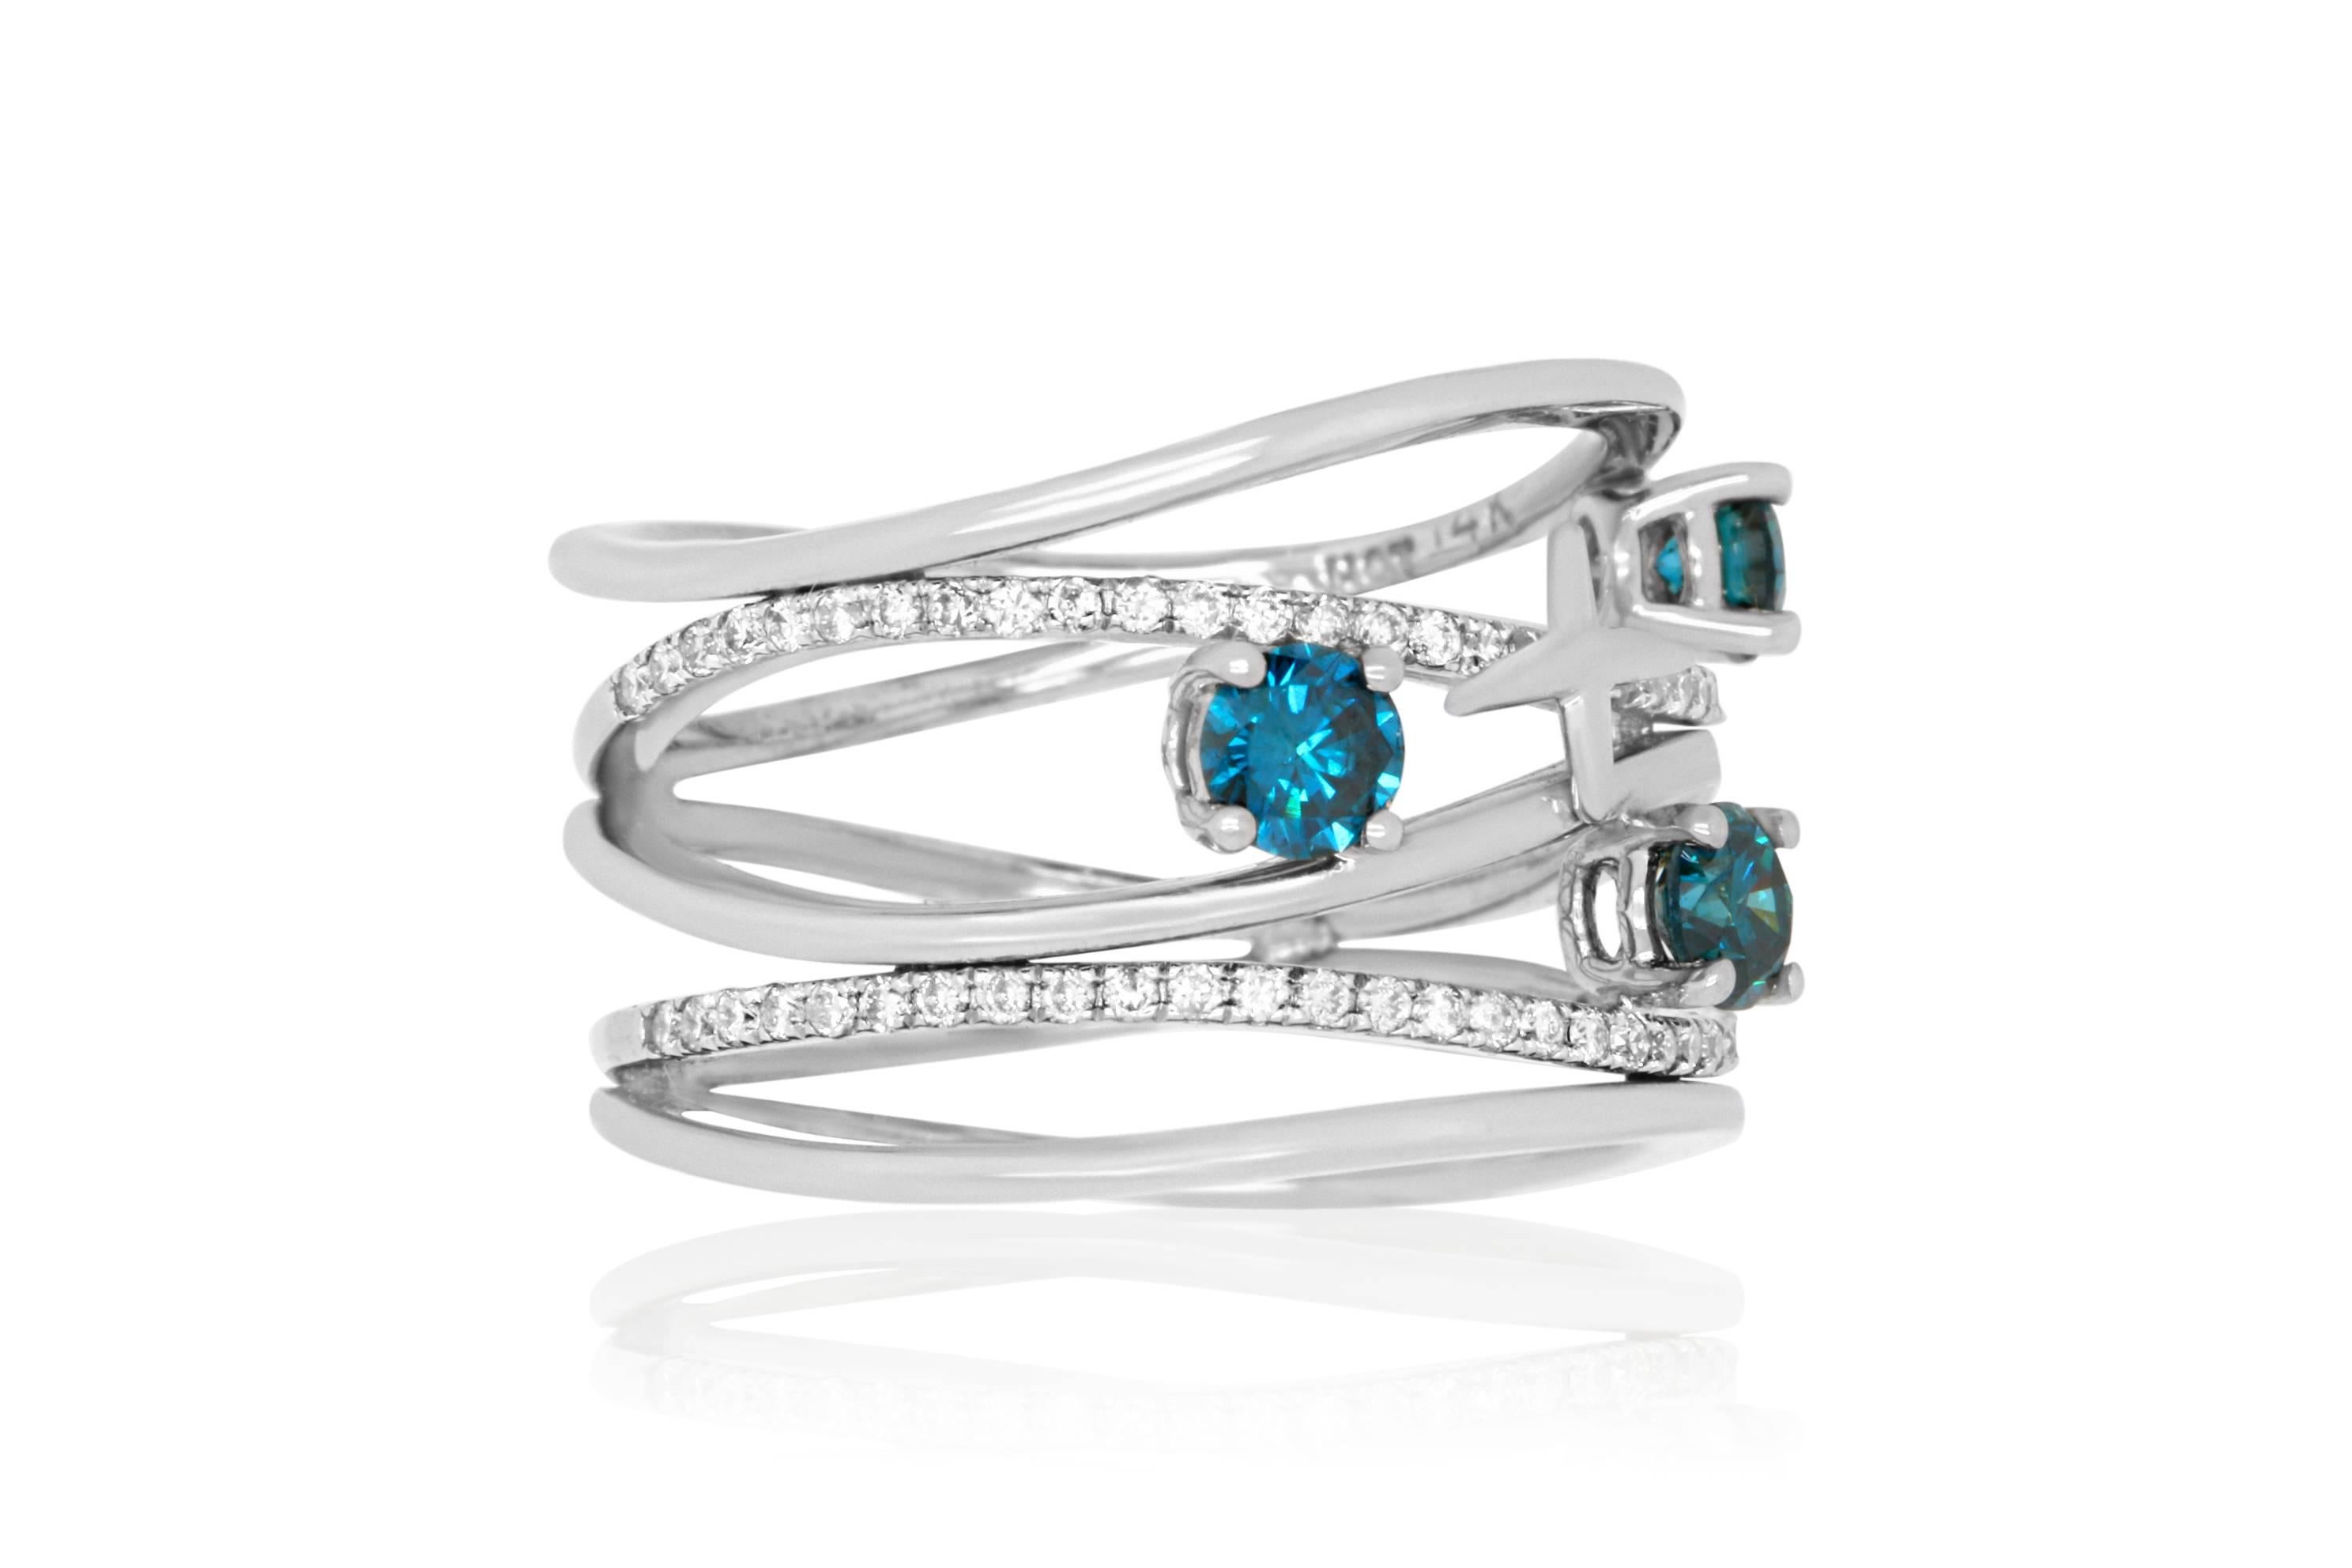 3 carat blue diamond ring